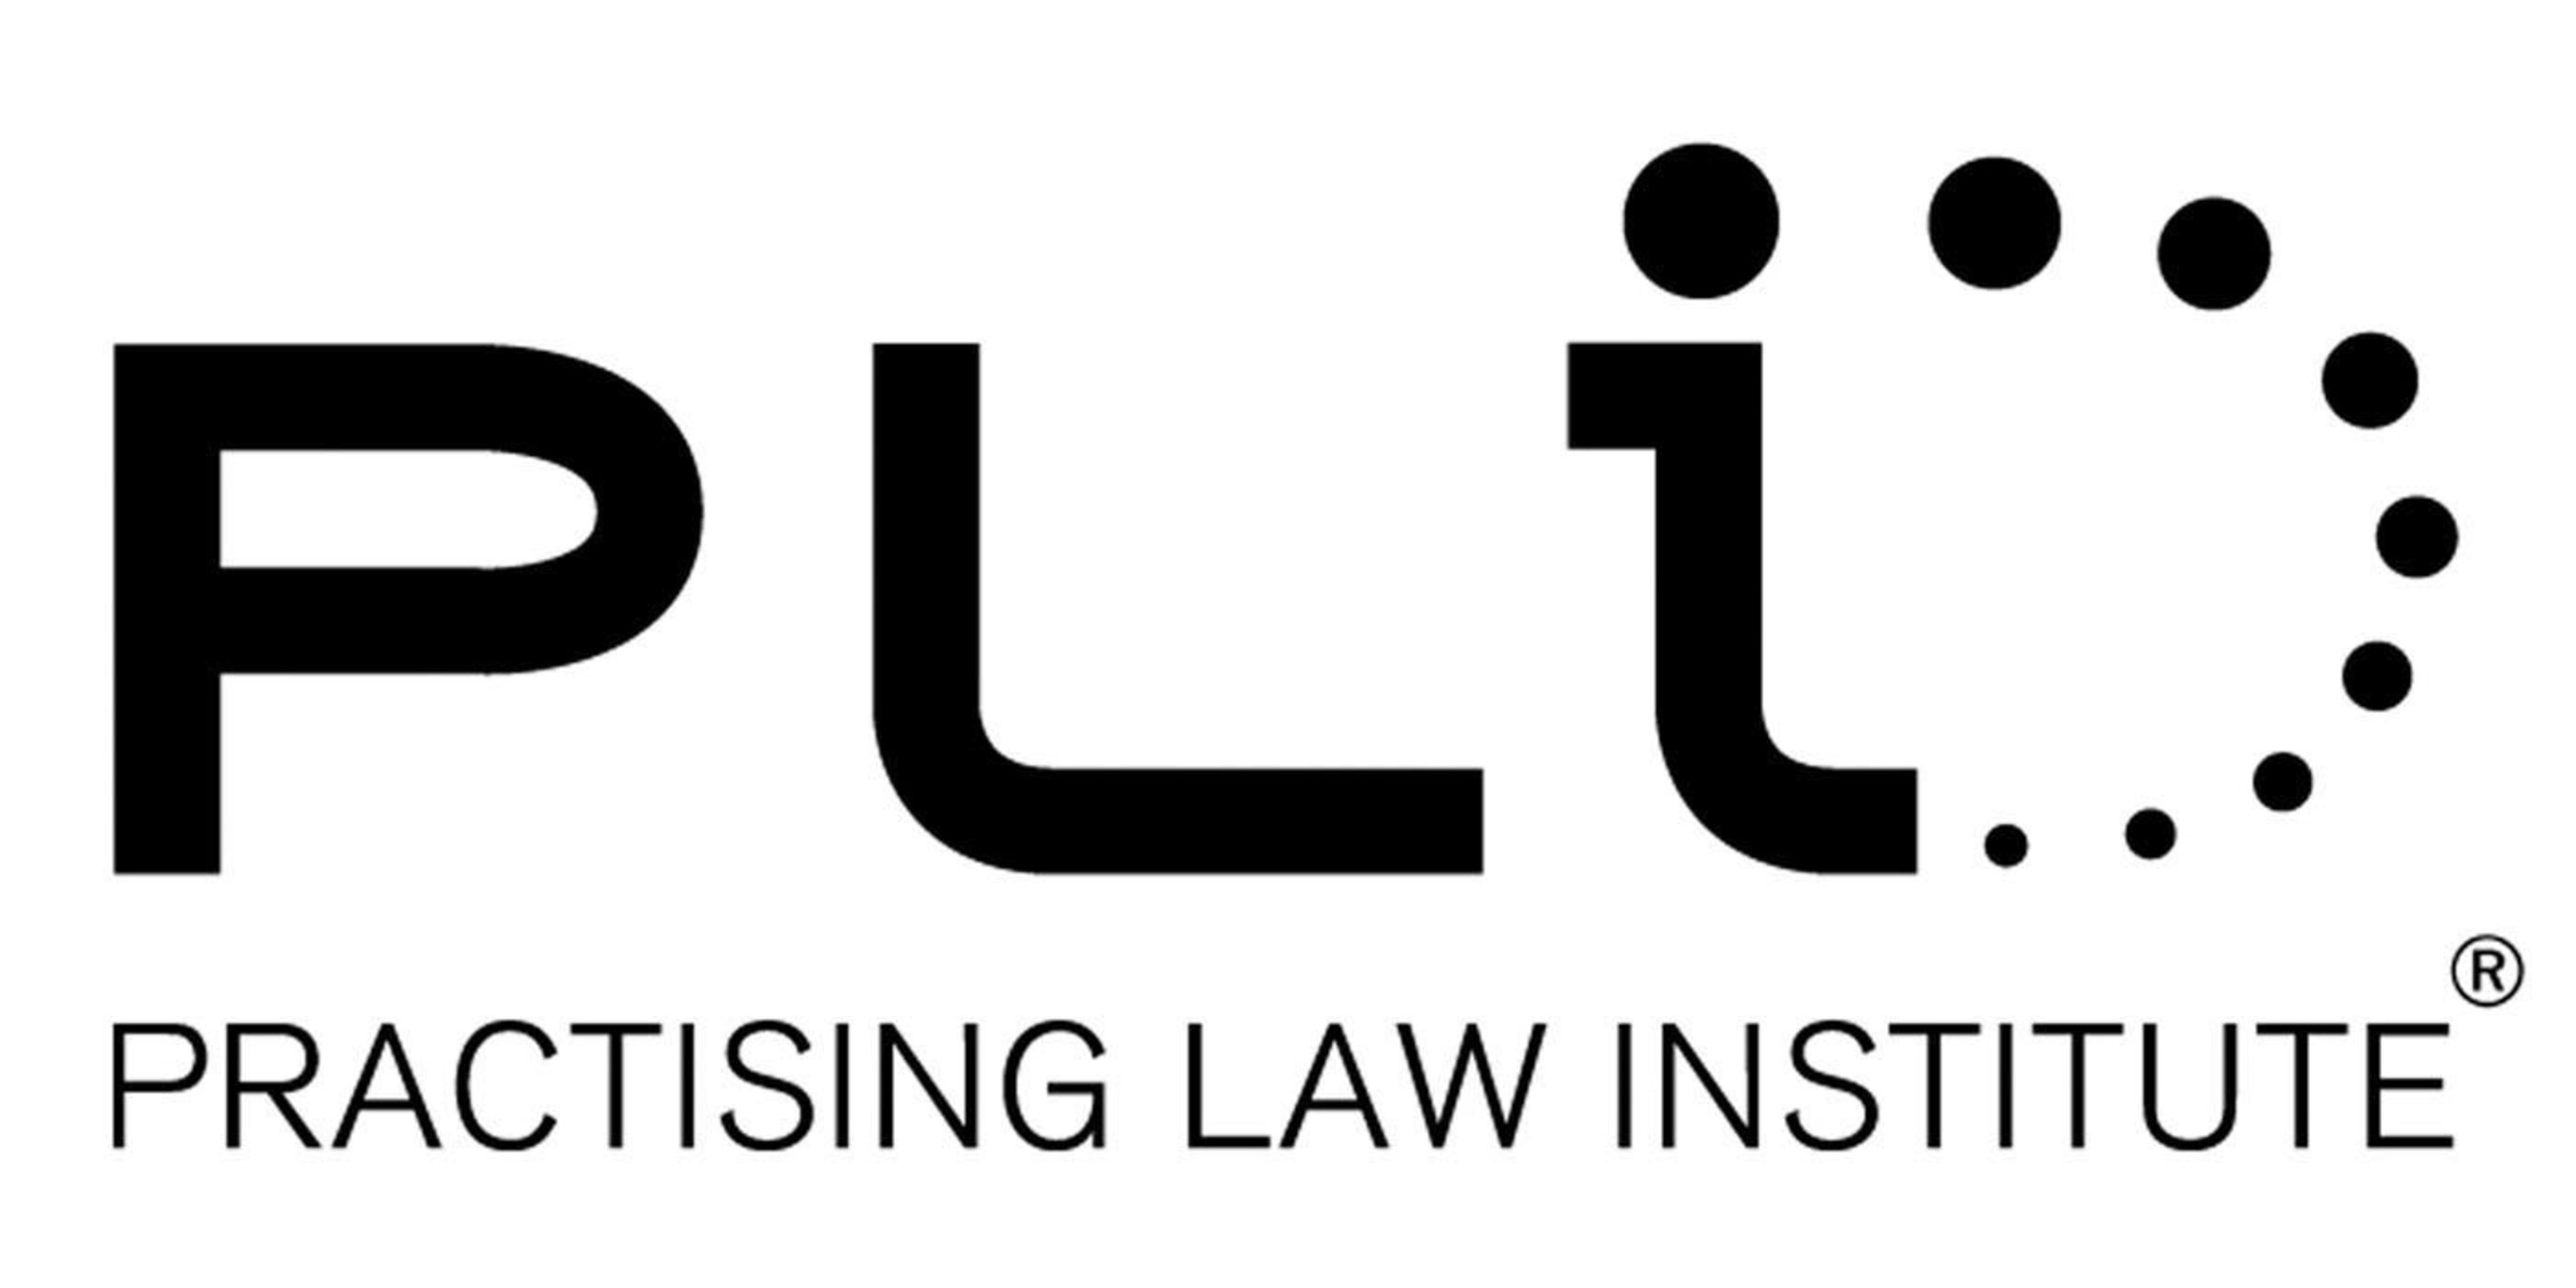 PLI Logo